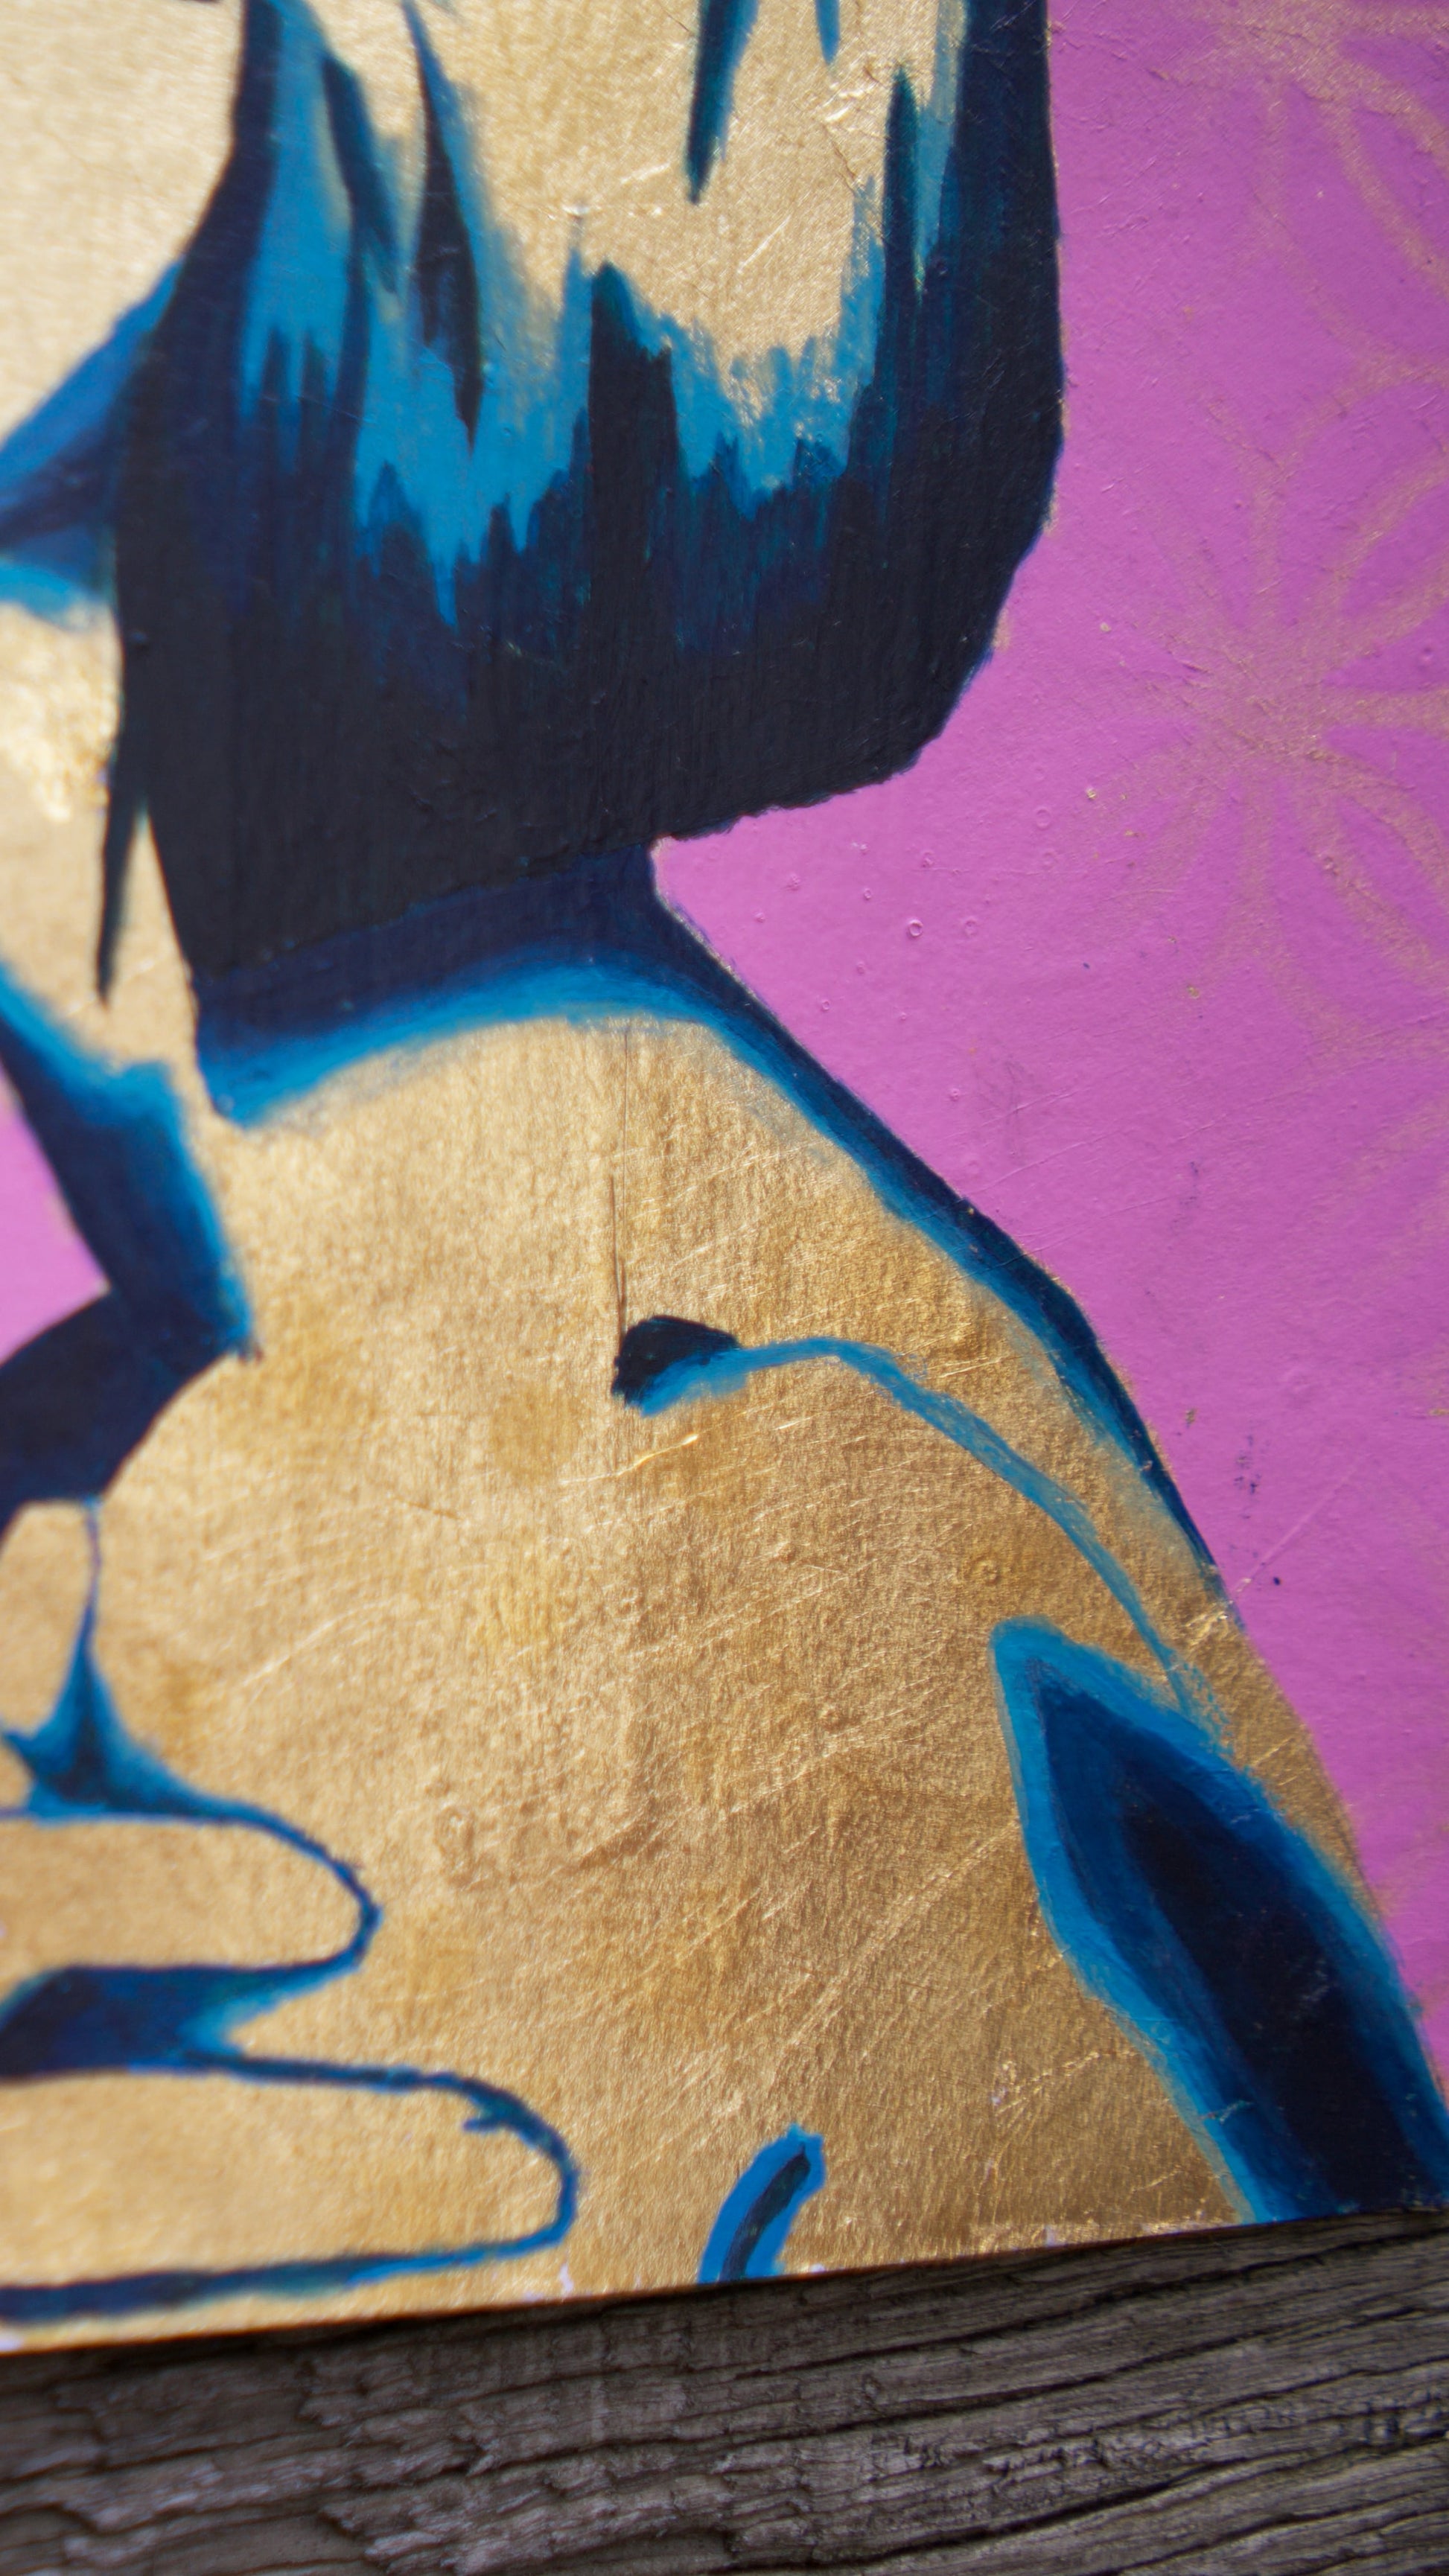 abstract art portait of a Woman on A4 Paper Blue & Pink Stencil Art Street Art melbourne wall art